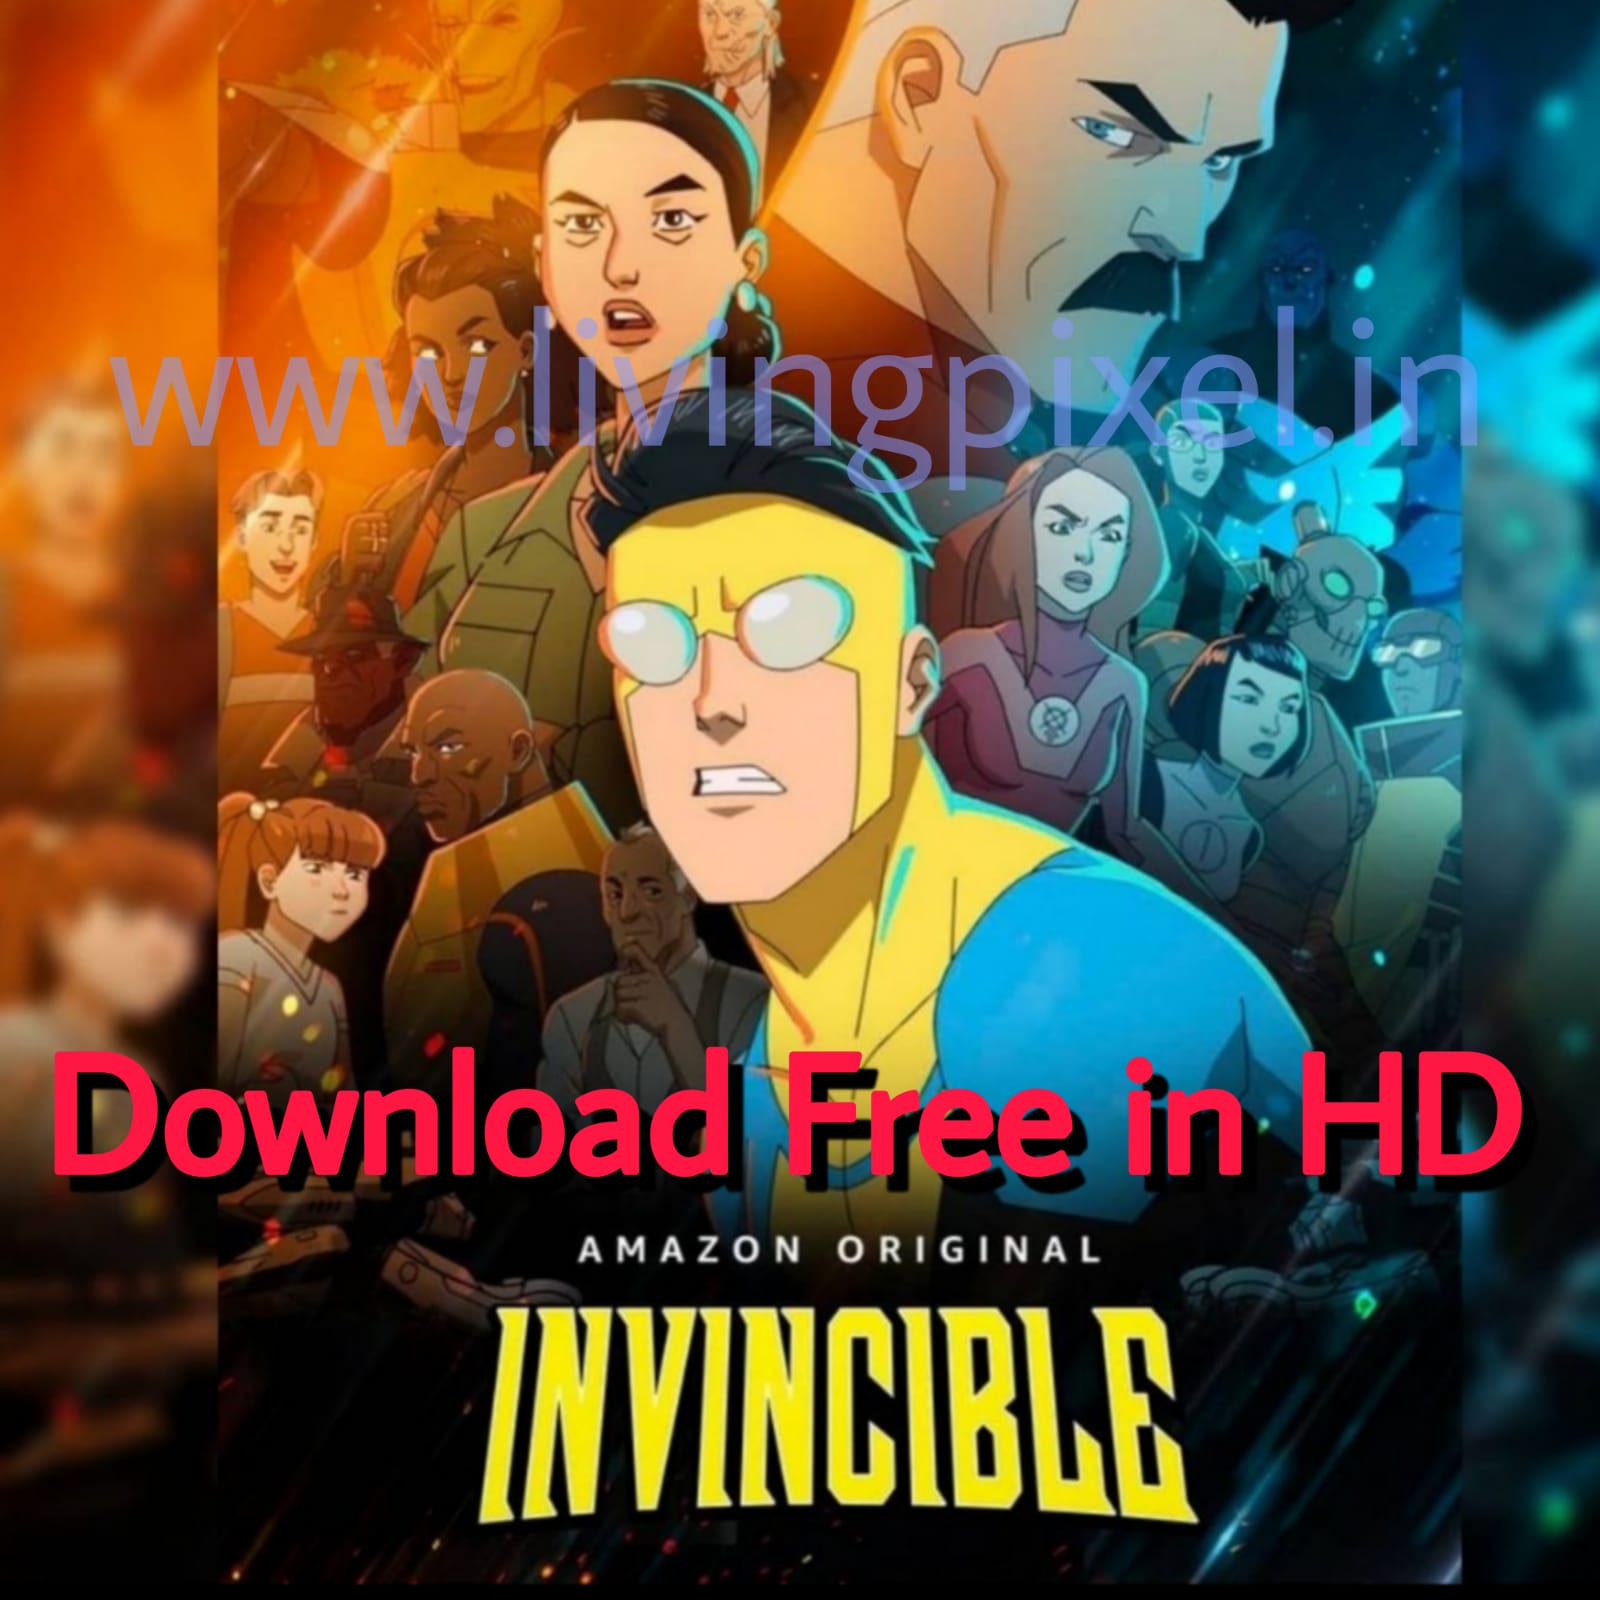 Invincible tv series download telegram link thumbnail